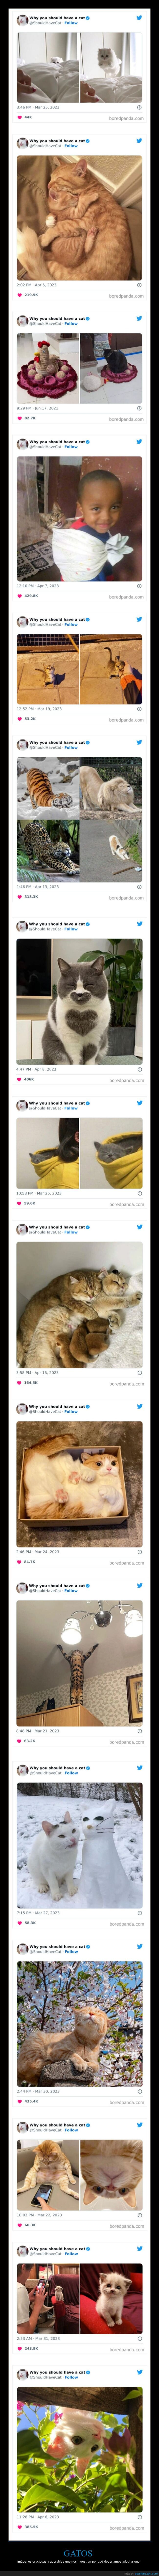 gatos,adoptar